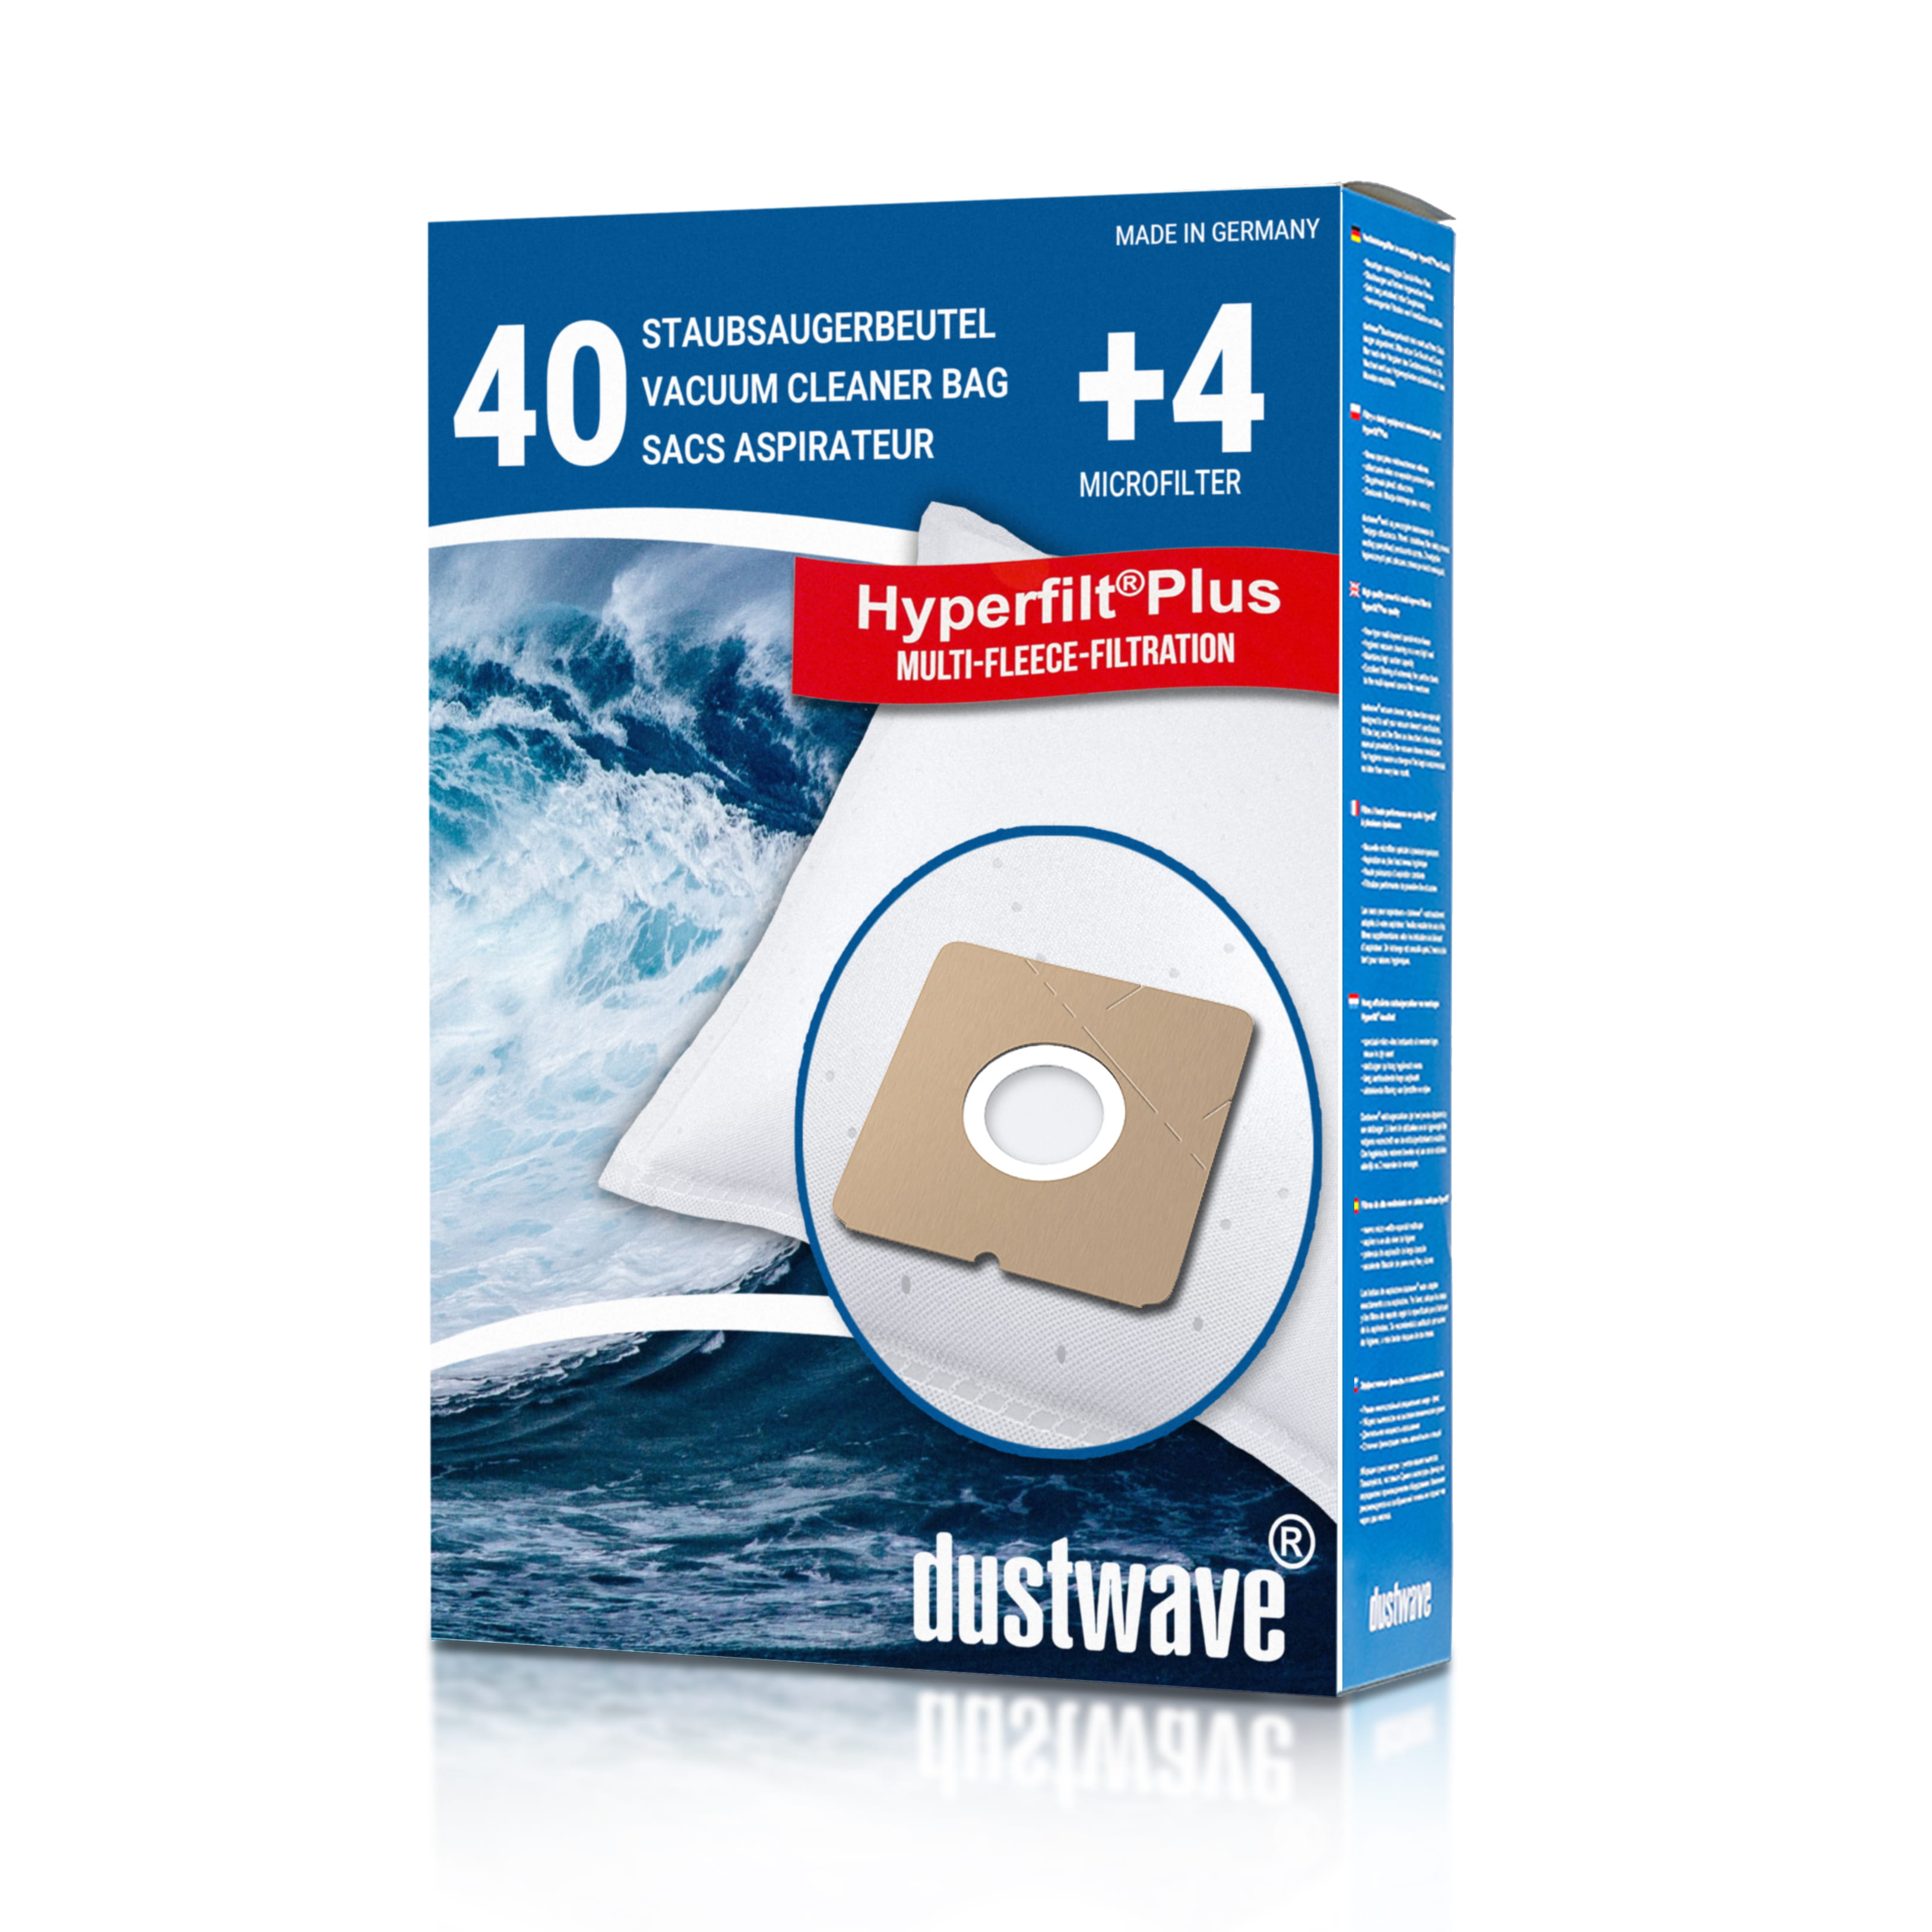 Dustwave® 40 Staubsaugerbeutel für Budget VC 1430 - hocheffizient, mehrlagiges Mikrovlies mit Hygieneverschluss - Made in Germany